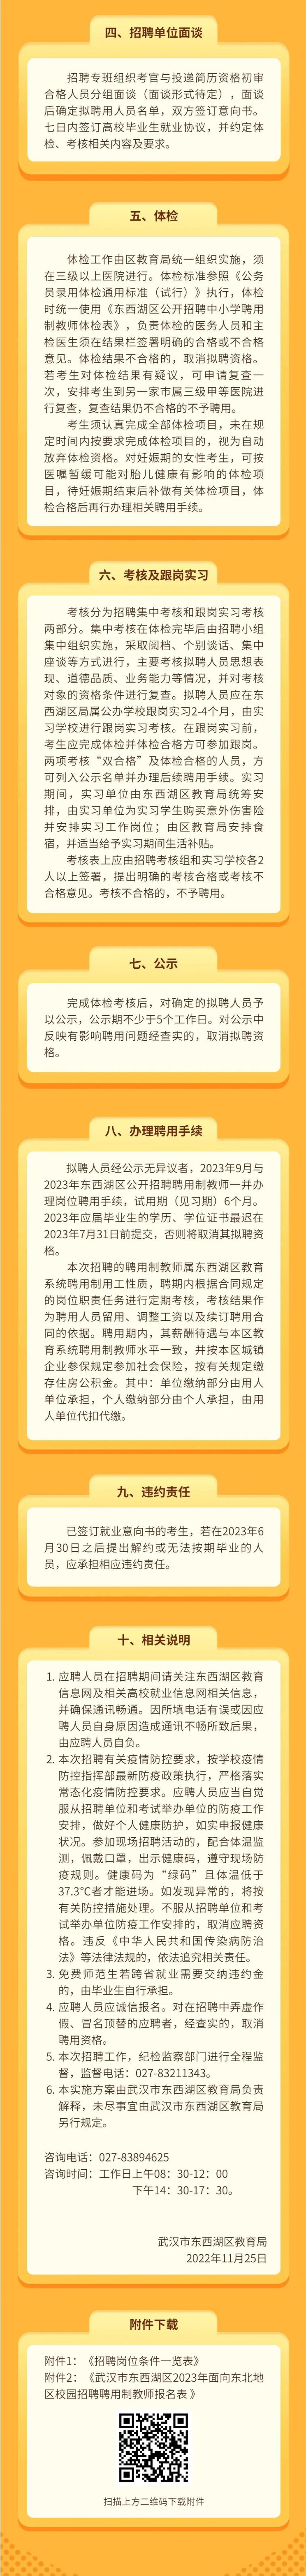 年薪12-15万！武汉东西湖区面向东北地区高校引进教育类人才公告